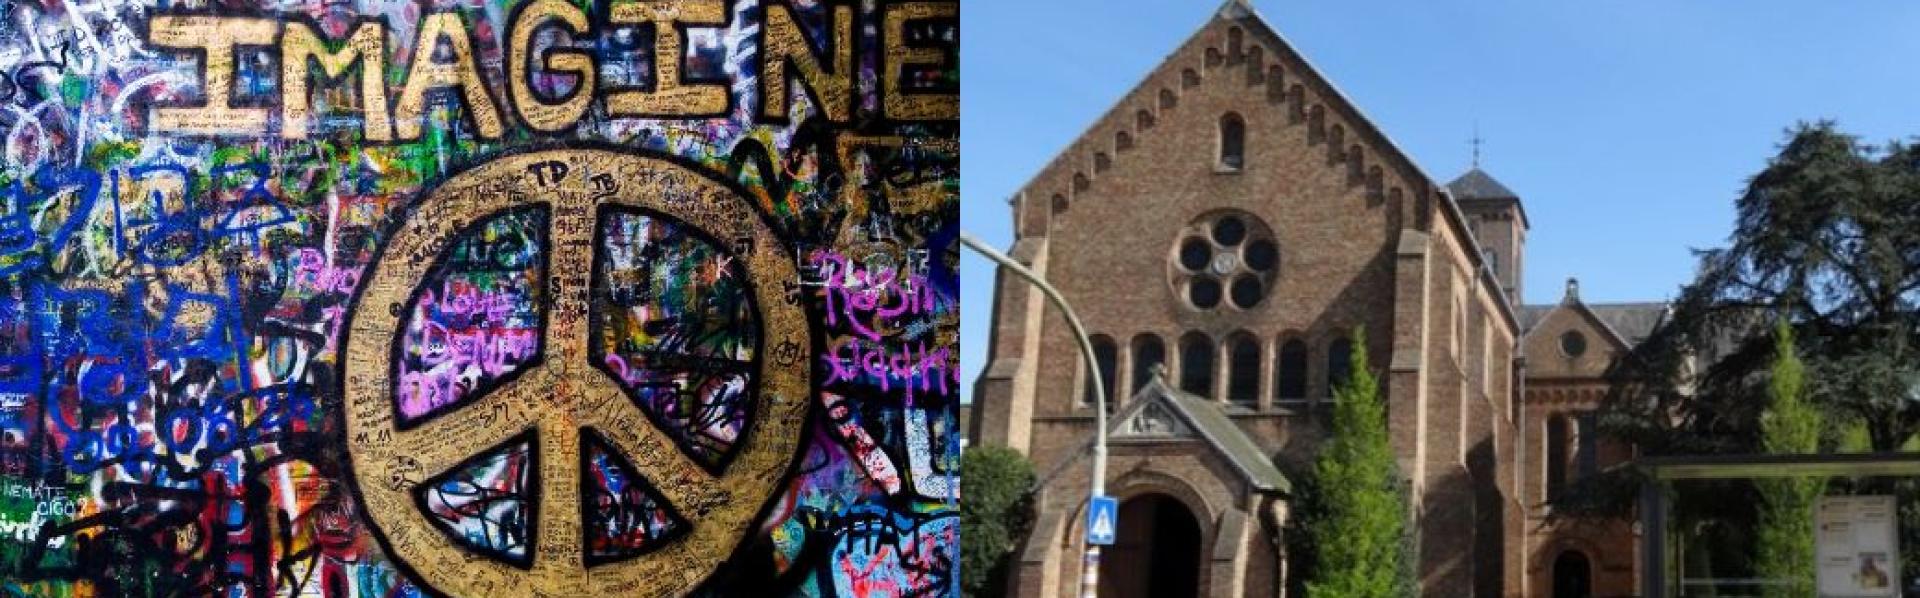 lennon wall met graffiti imagine peace - beeld Sint Baafs kerk op Sint Andries Brugge